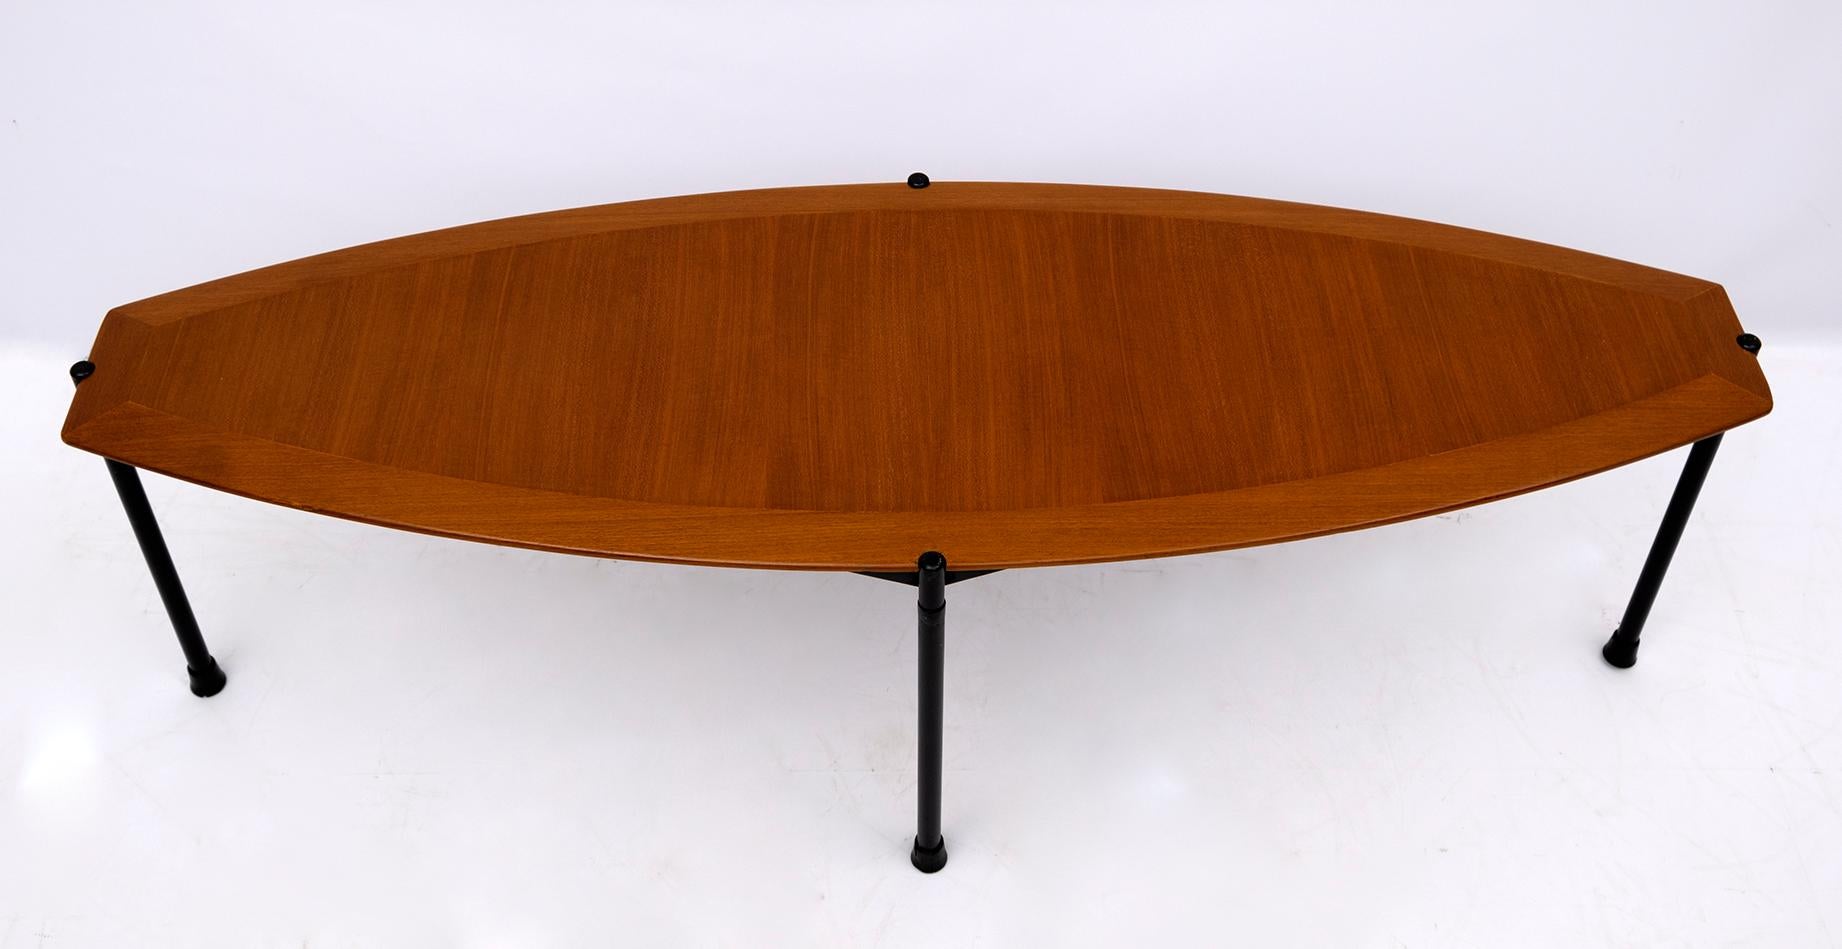 Table basse particulière des années 70, plateau en placage d'acajou et base en métal, la forme rappelle celle d'une planche de surf.